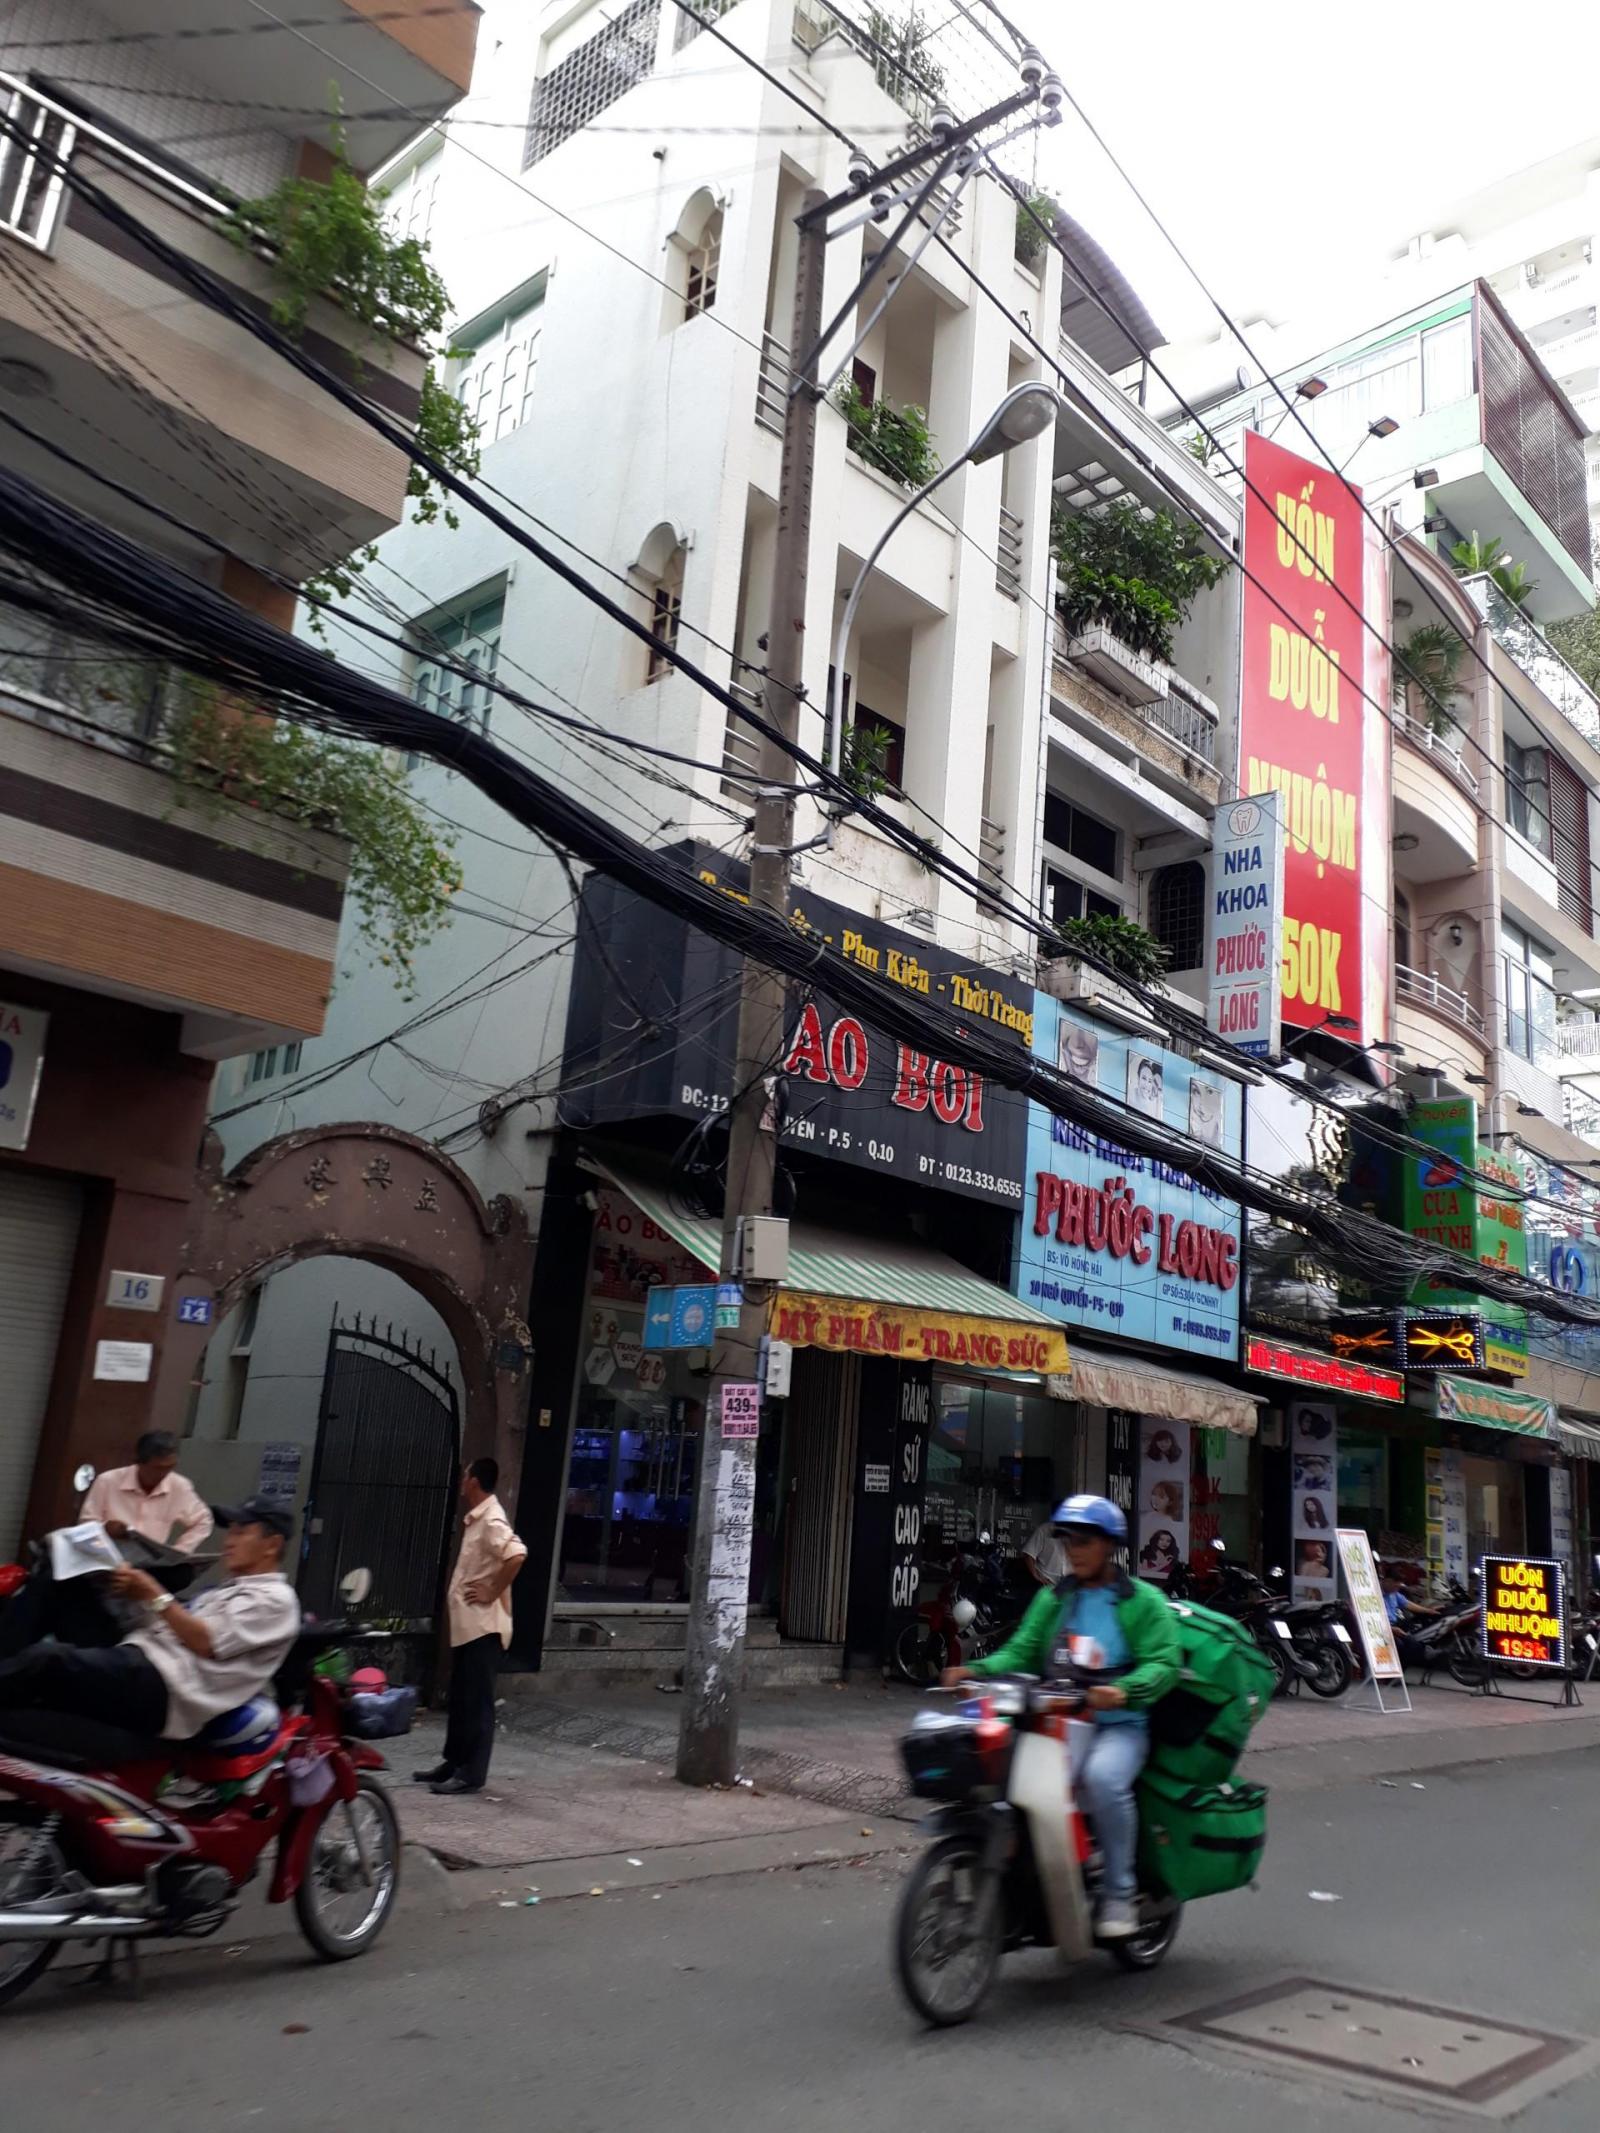  Bán gấp nhà MT đường Hồng Bàng, gần Thuận Kiều Plaza, Q. 5, DT: 108m2, giá tốt nhất thị trường